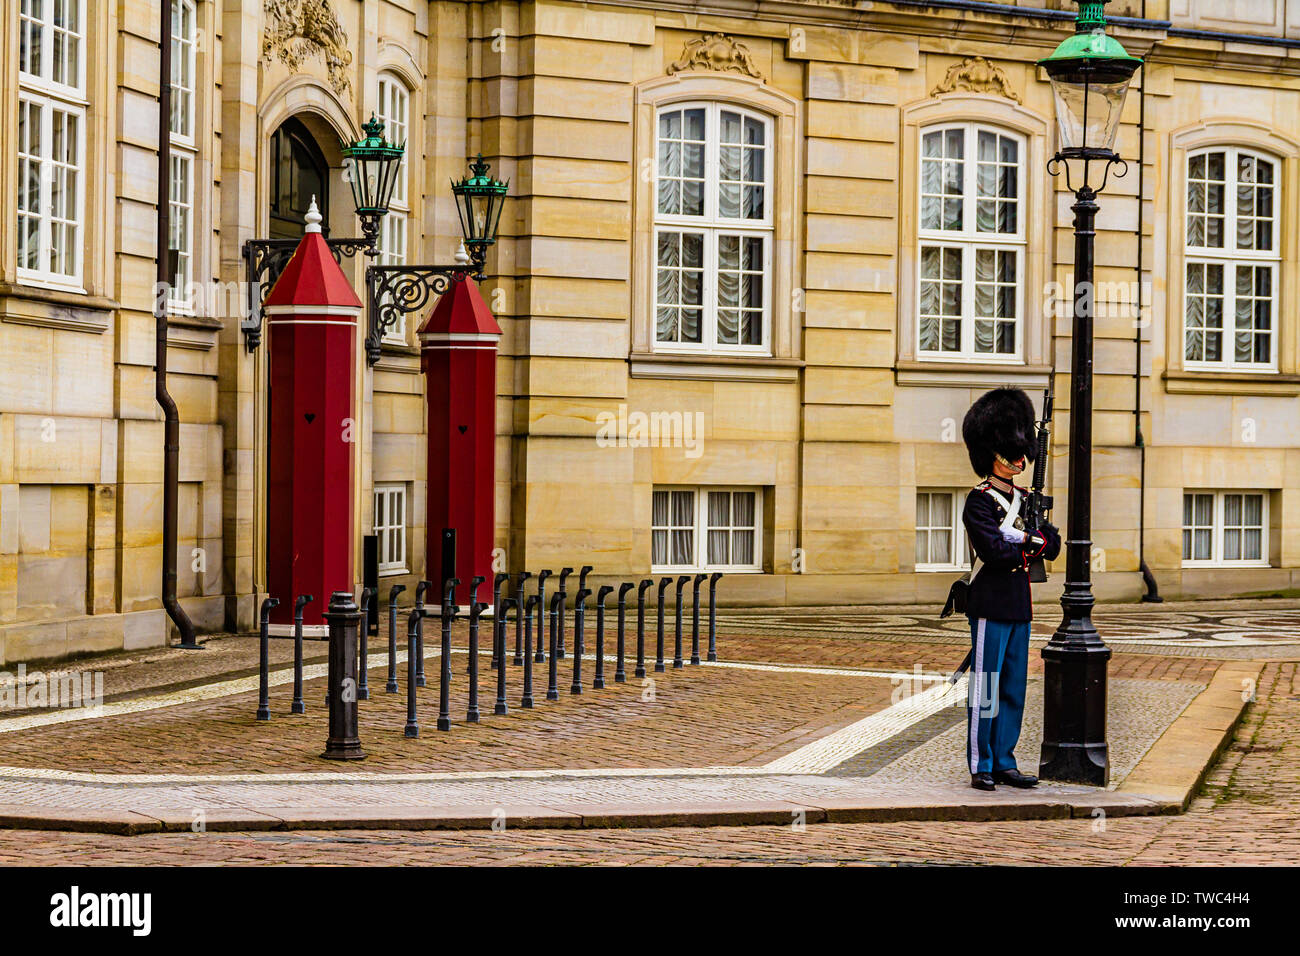 Une garde royale danoise à l'extérieur de la résidence royale du Palais d'Amalienborg, Copenhague, Danemark. Janvier 2019. Banque D'Images